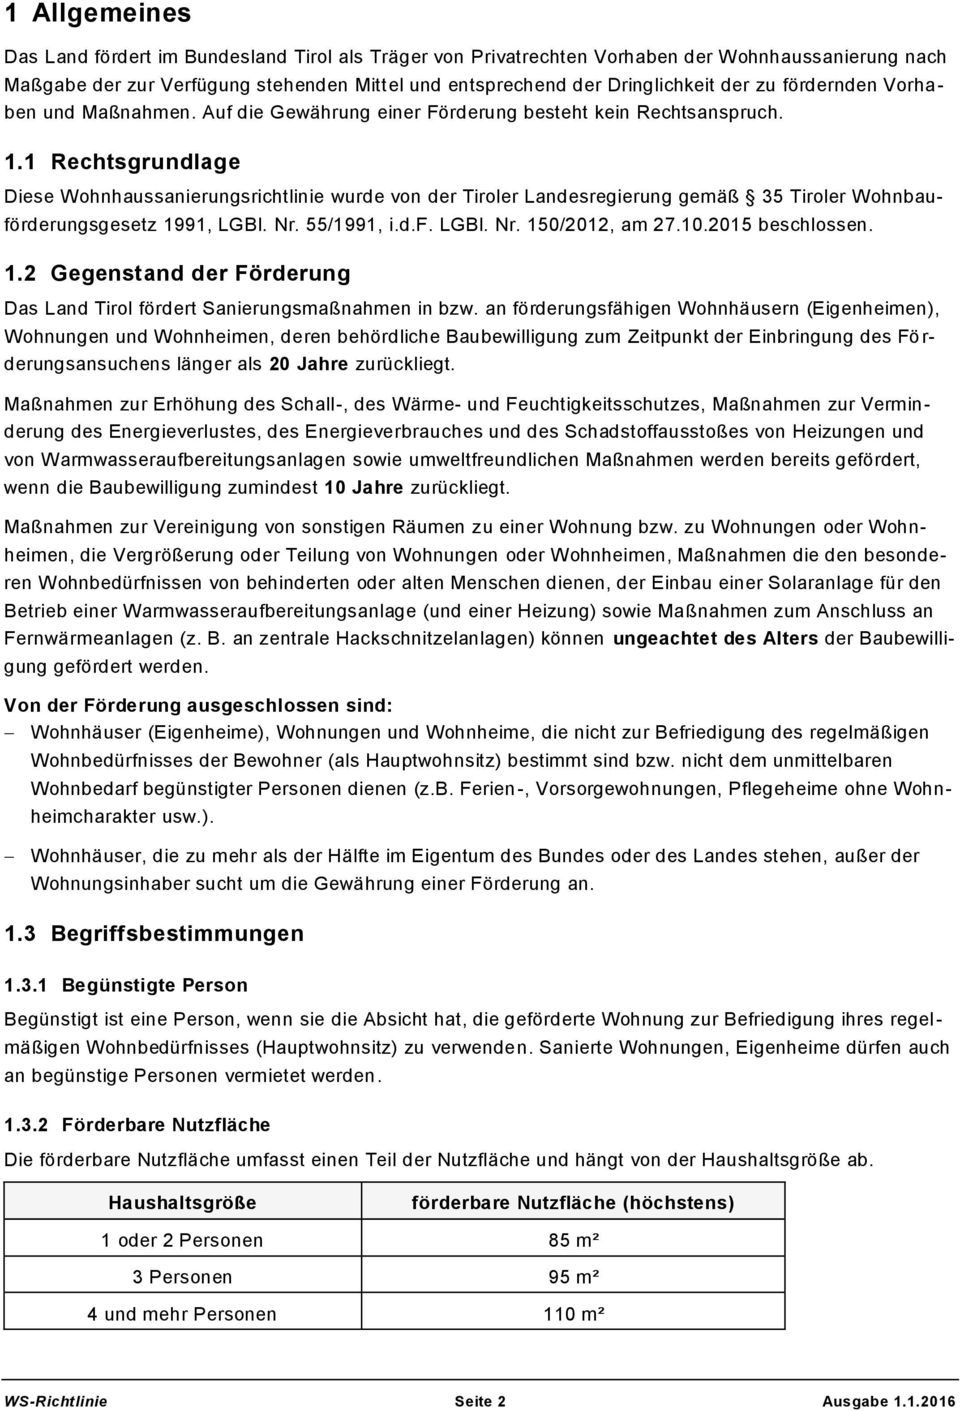 1 Rechtsgrundlage Diese Wohnhaussanierungsrichtlinie wurde von der Tiroler Landesregierung gemäß 35 Tiroler Wohnbauförderungsgesetz 1991, LGBl. Nr. 55/1991, i.d.f. LGBl. Nr. 150/2012, am 27.10.